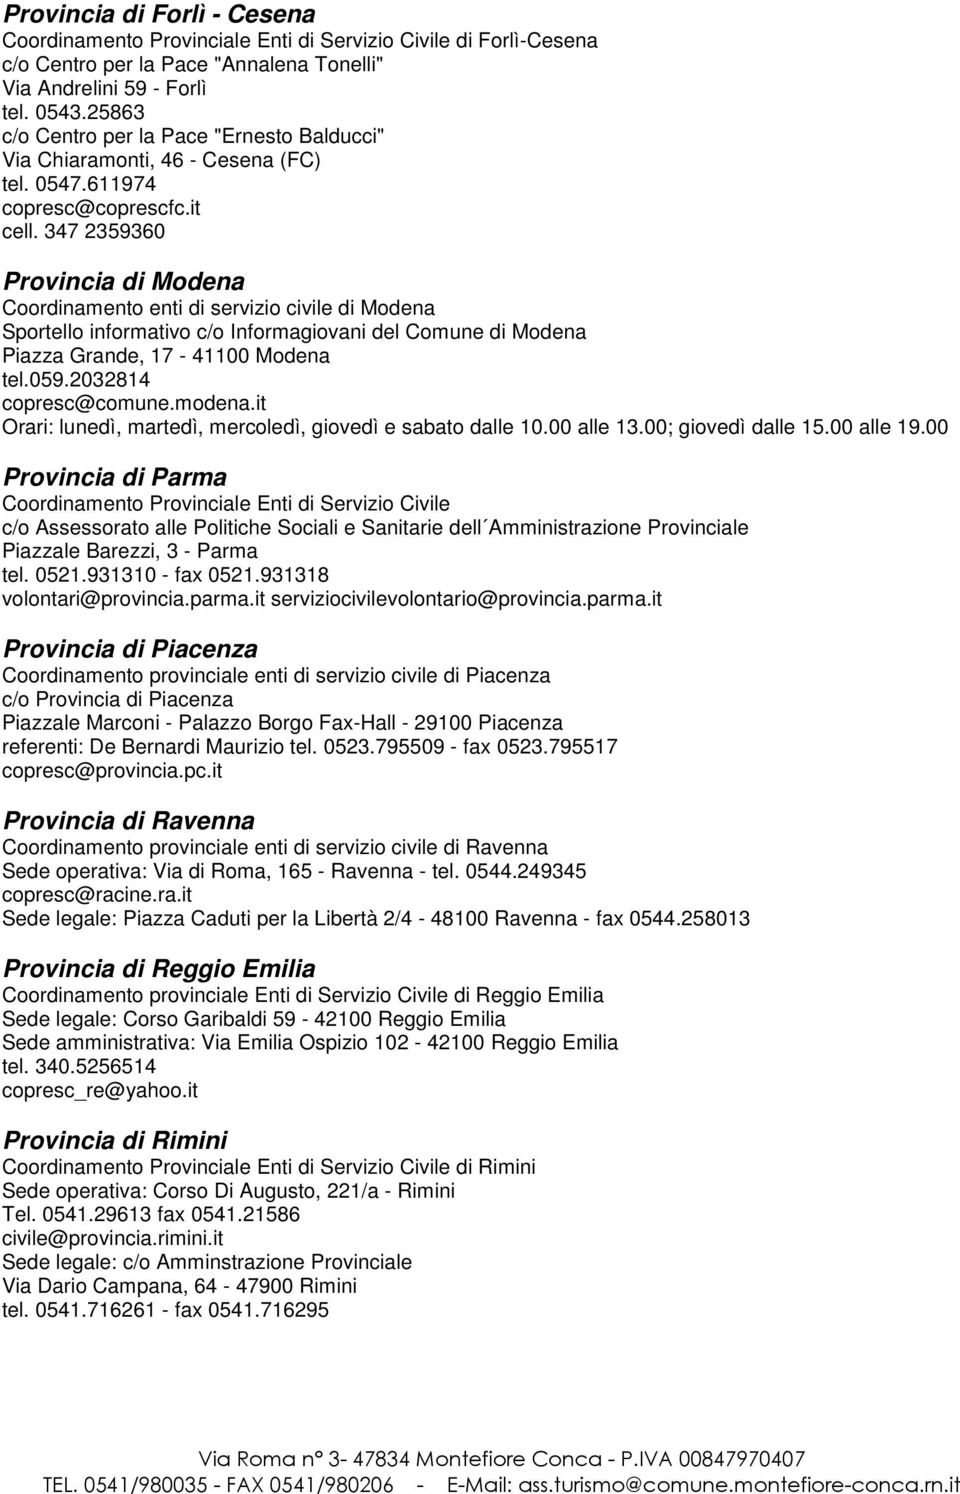 347 2359360 Provincia di Modena Coordinamento enti di servizio civile di Modena Sportello informativo c/o Informagiovani del Comune di Modena Piazza Grande, 17-41100 Modena tel.059.